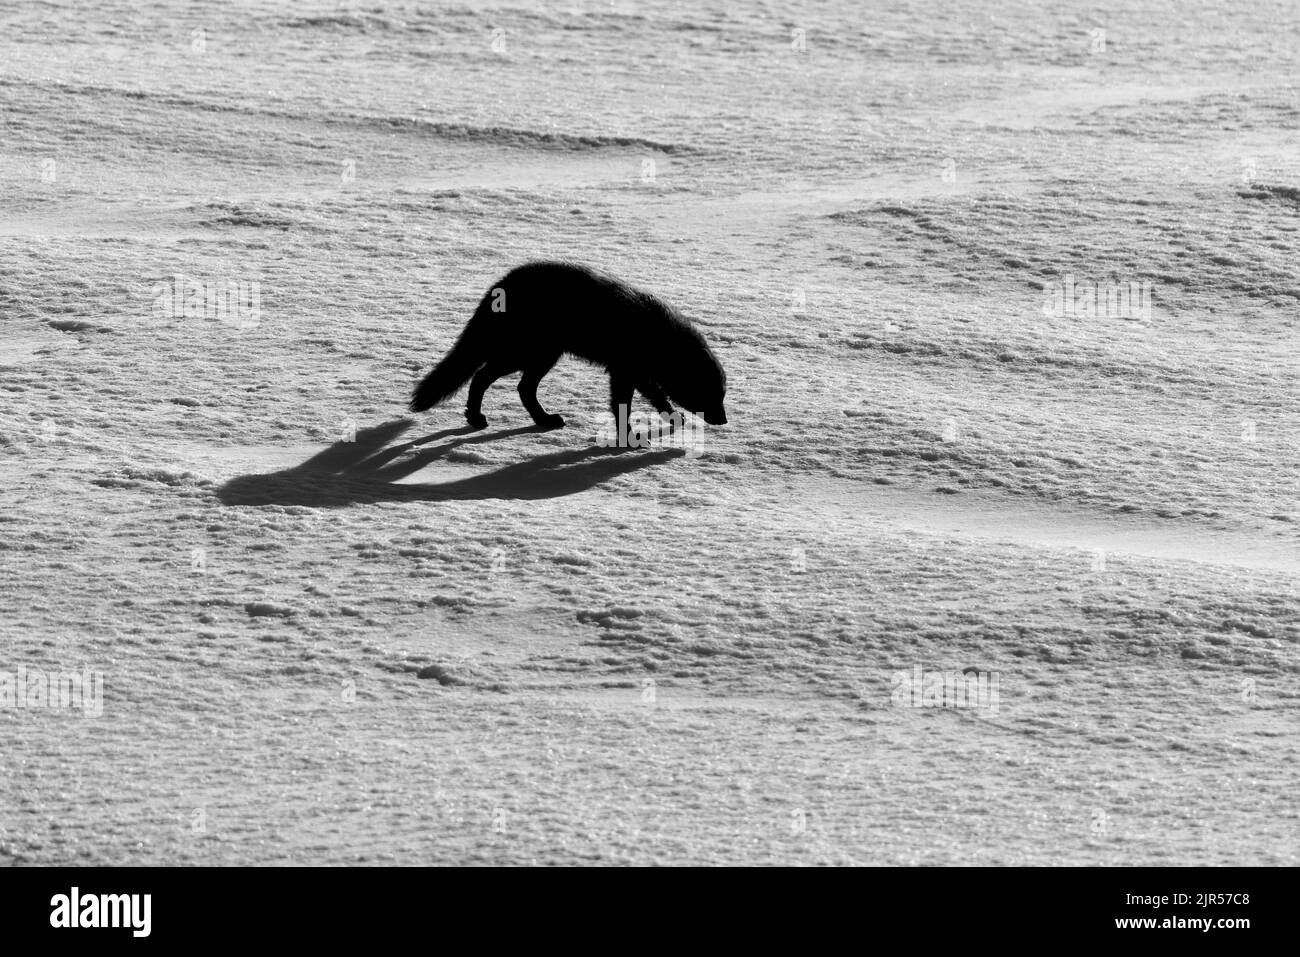 La silhouette della volpe artica camminando nella neve nella riserva naturale in Islanda Foto Stock